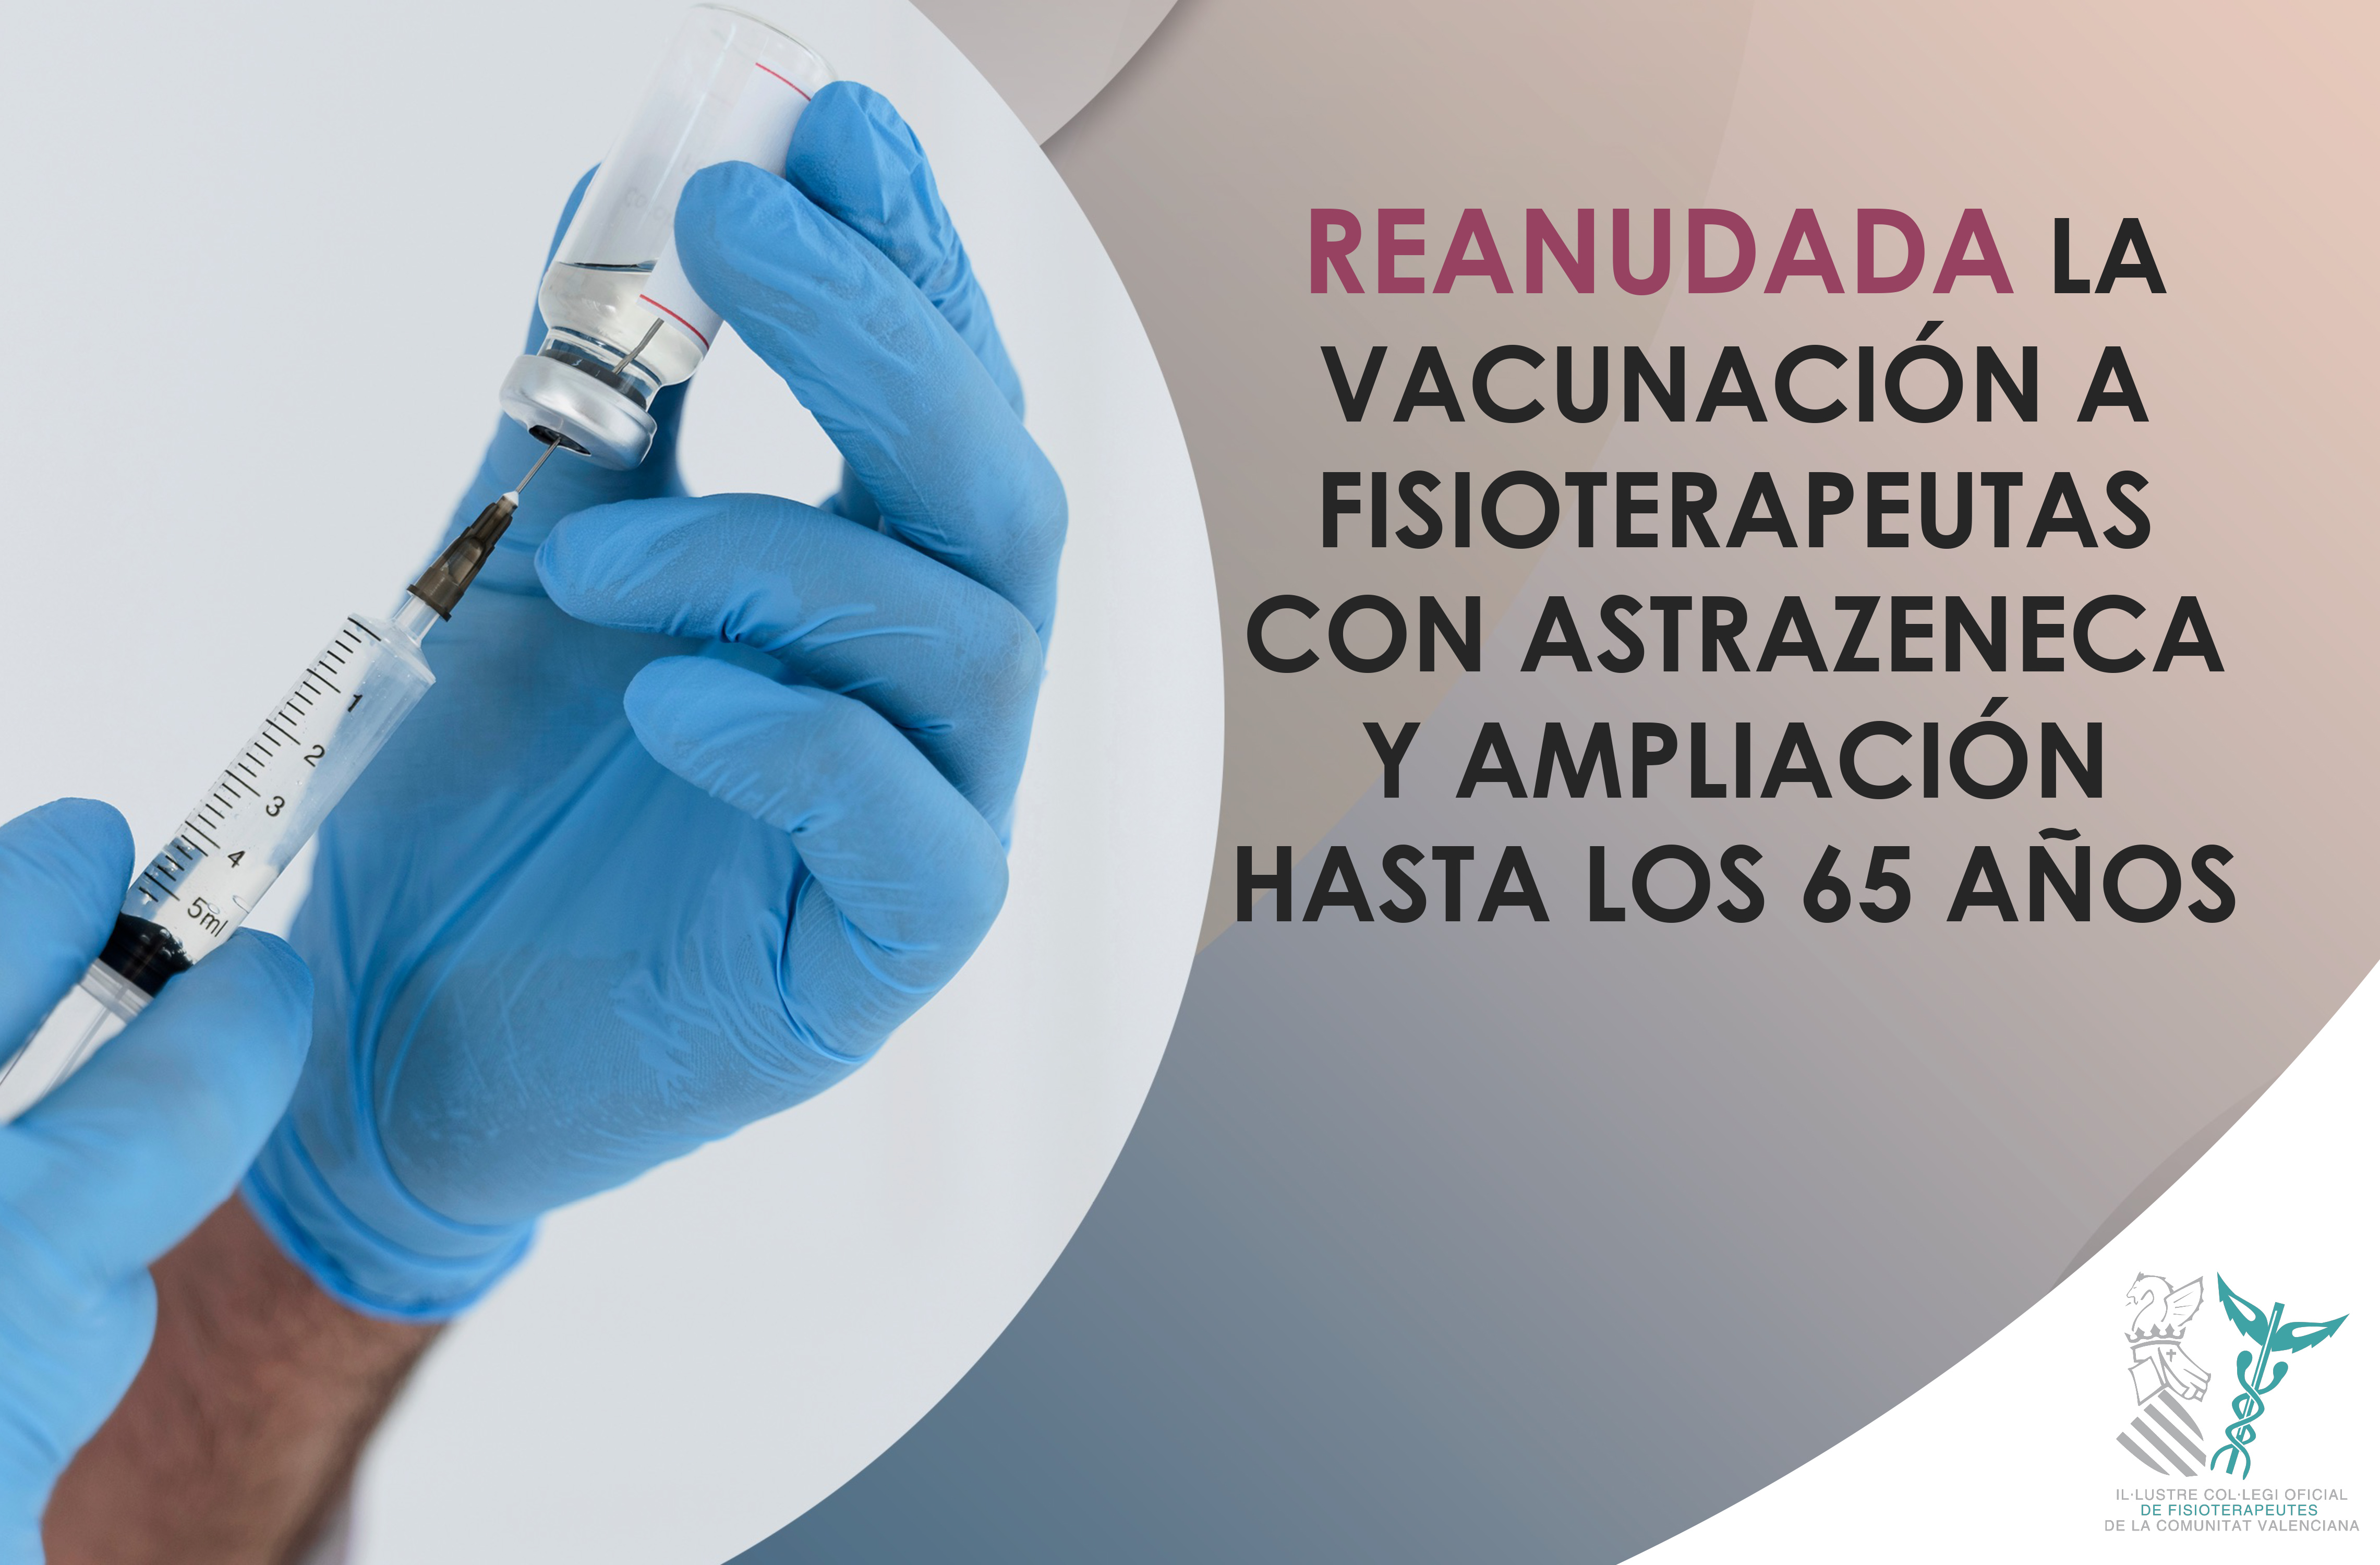 Reanudada la vacunación a fisioterapeutas de la Comunidad Valenciana con AstraZeneca y ampliación hasta los 65 años